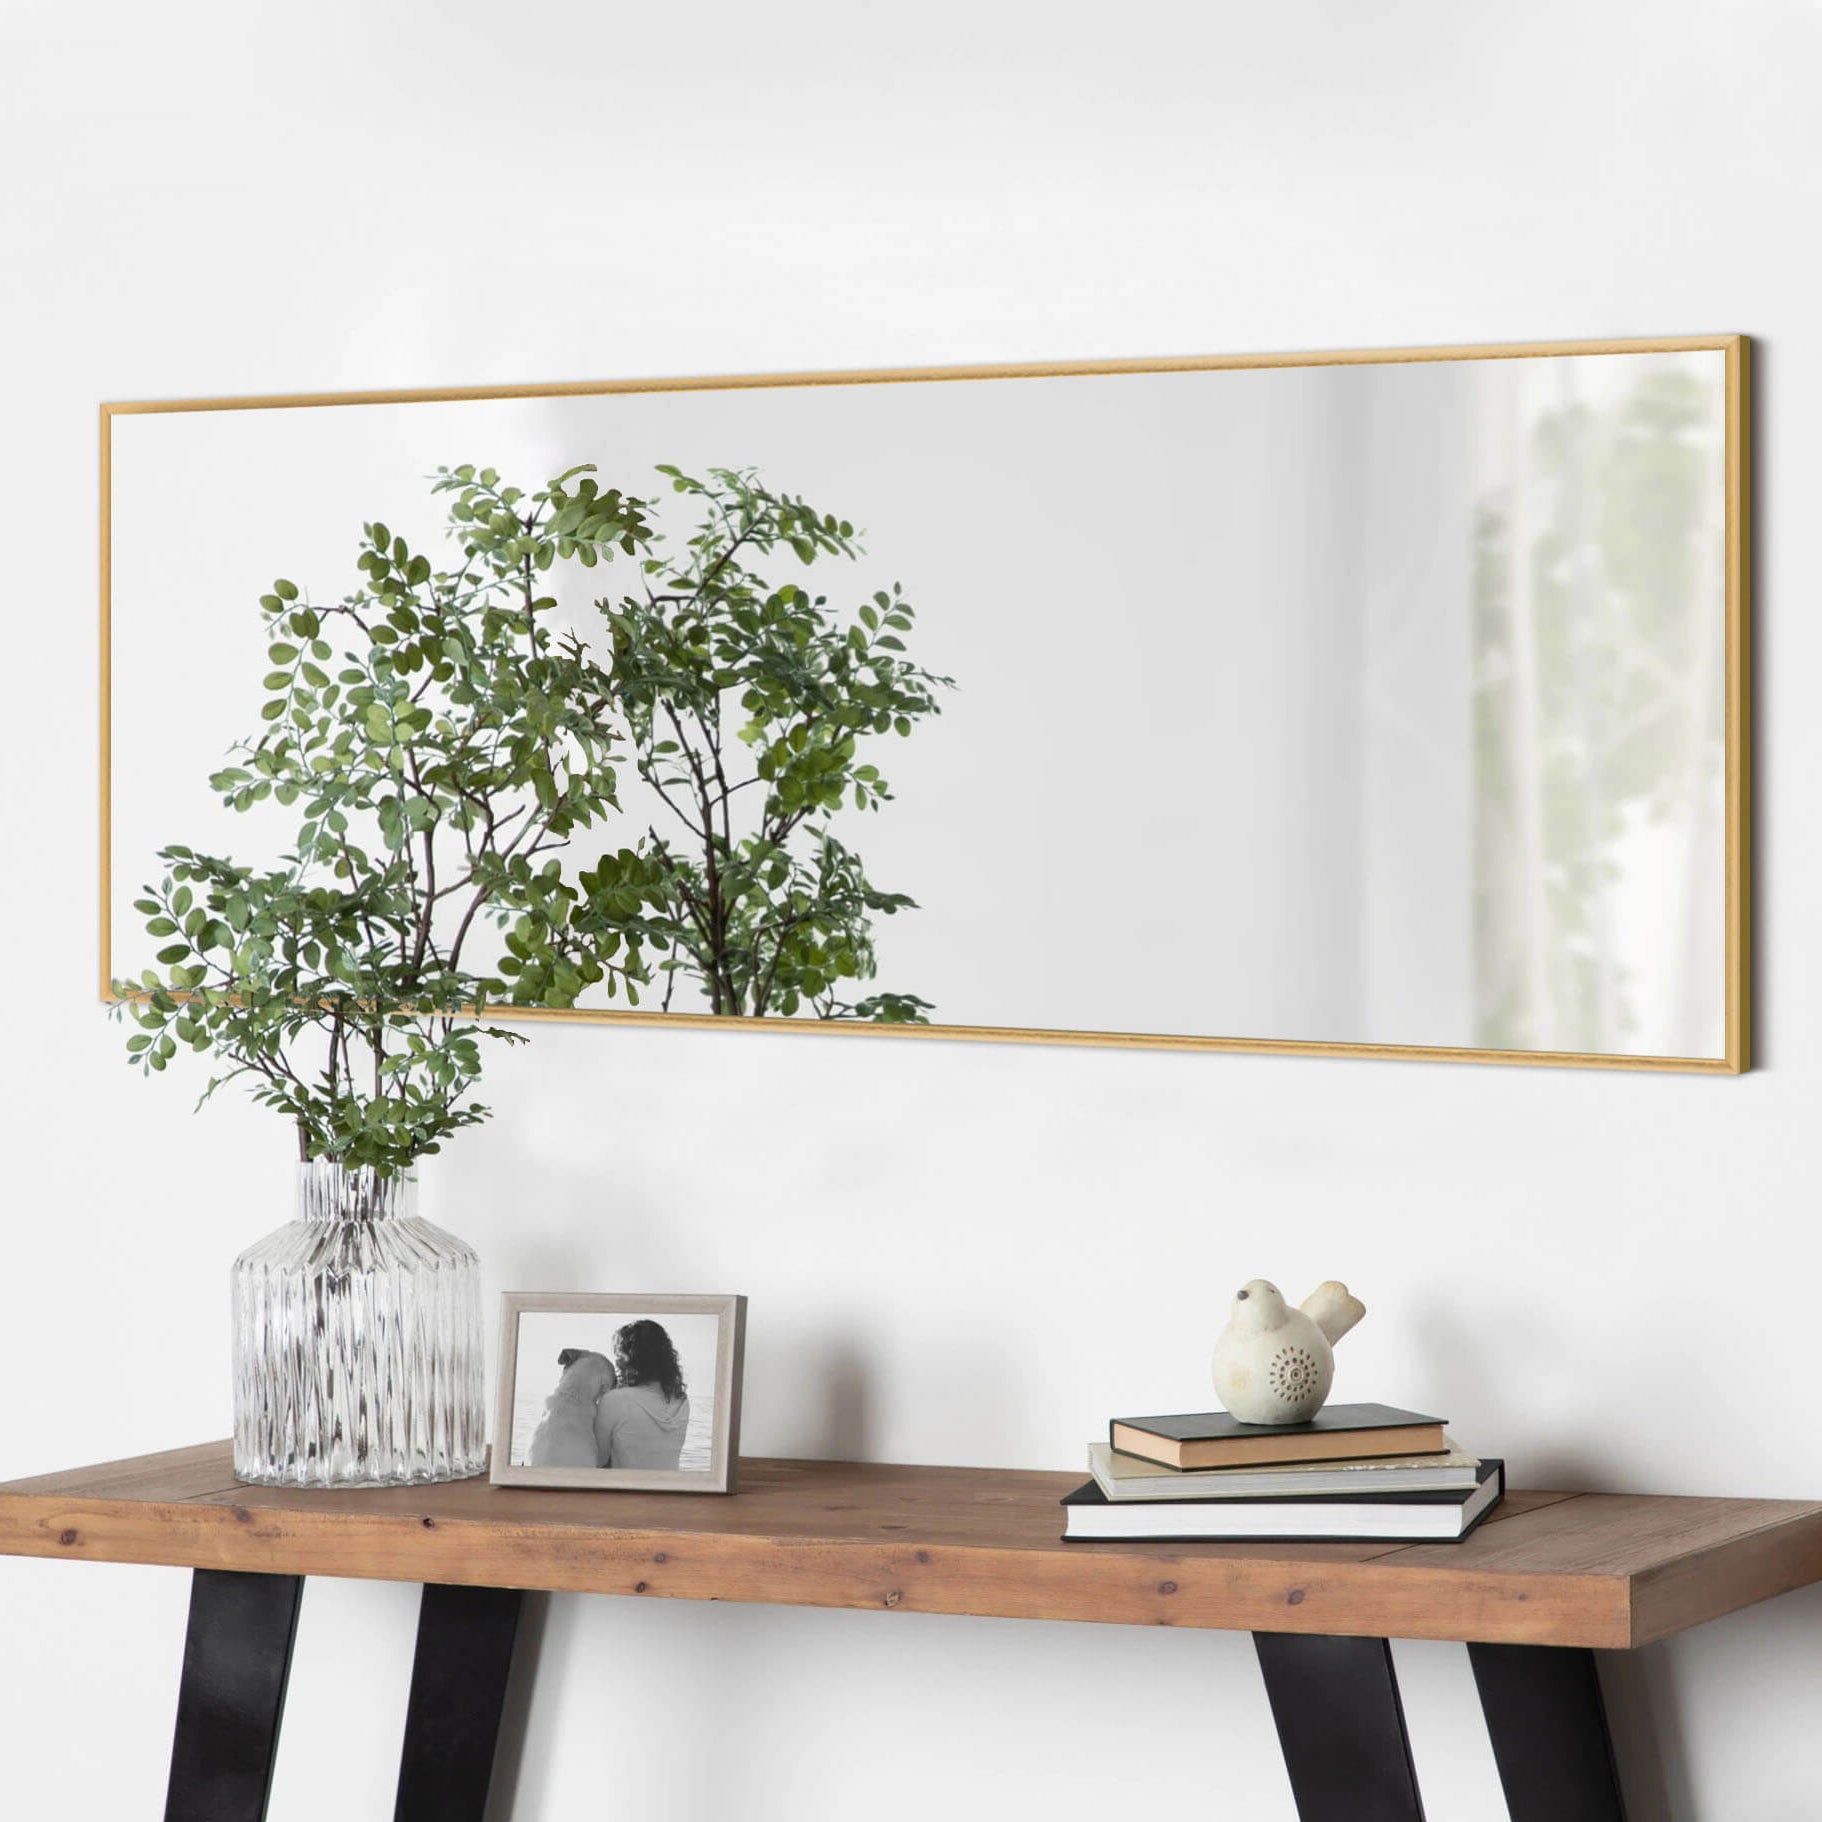 Doris-65"x22" Classic Framed Bedroom Full Length Wall Mirror